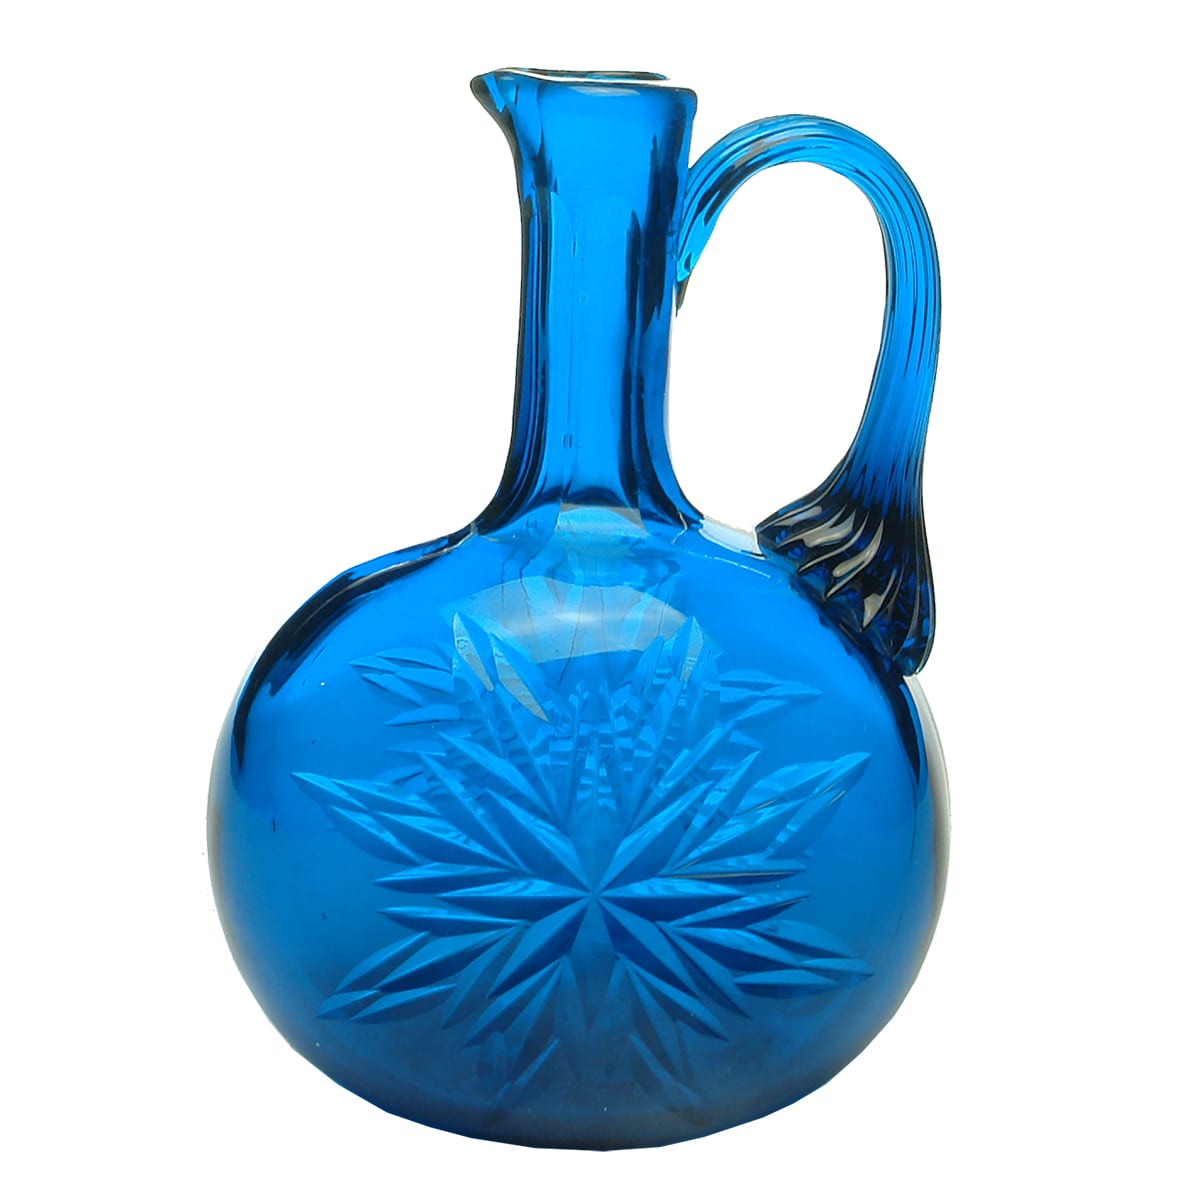 Blue handled decanter with polished pontil.